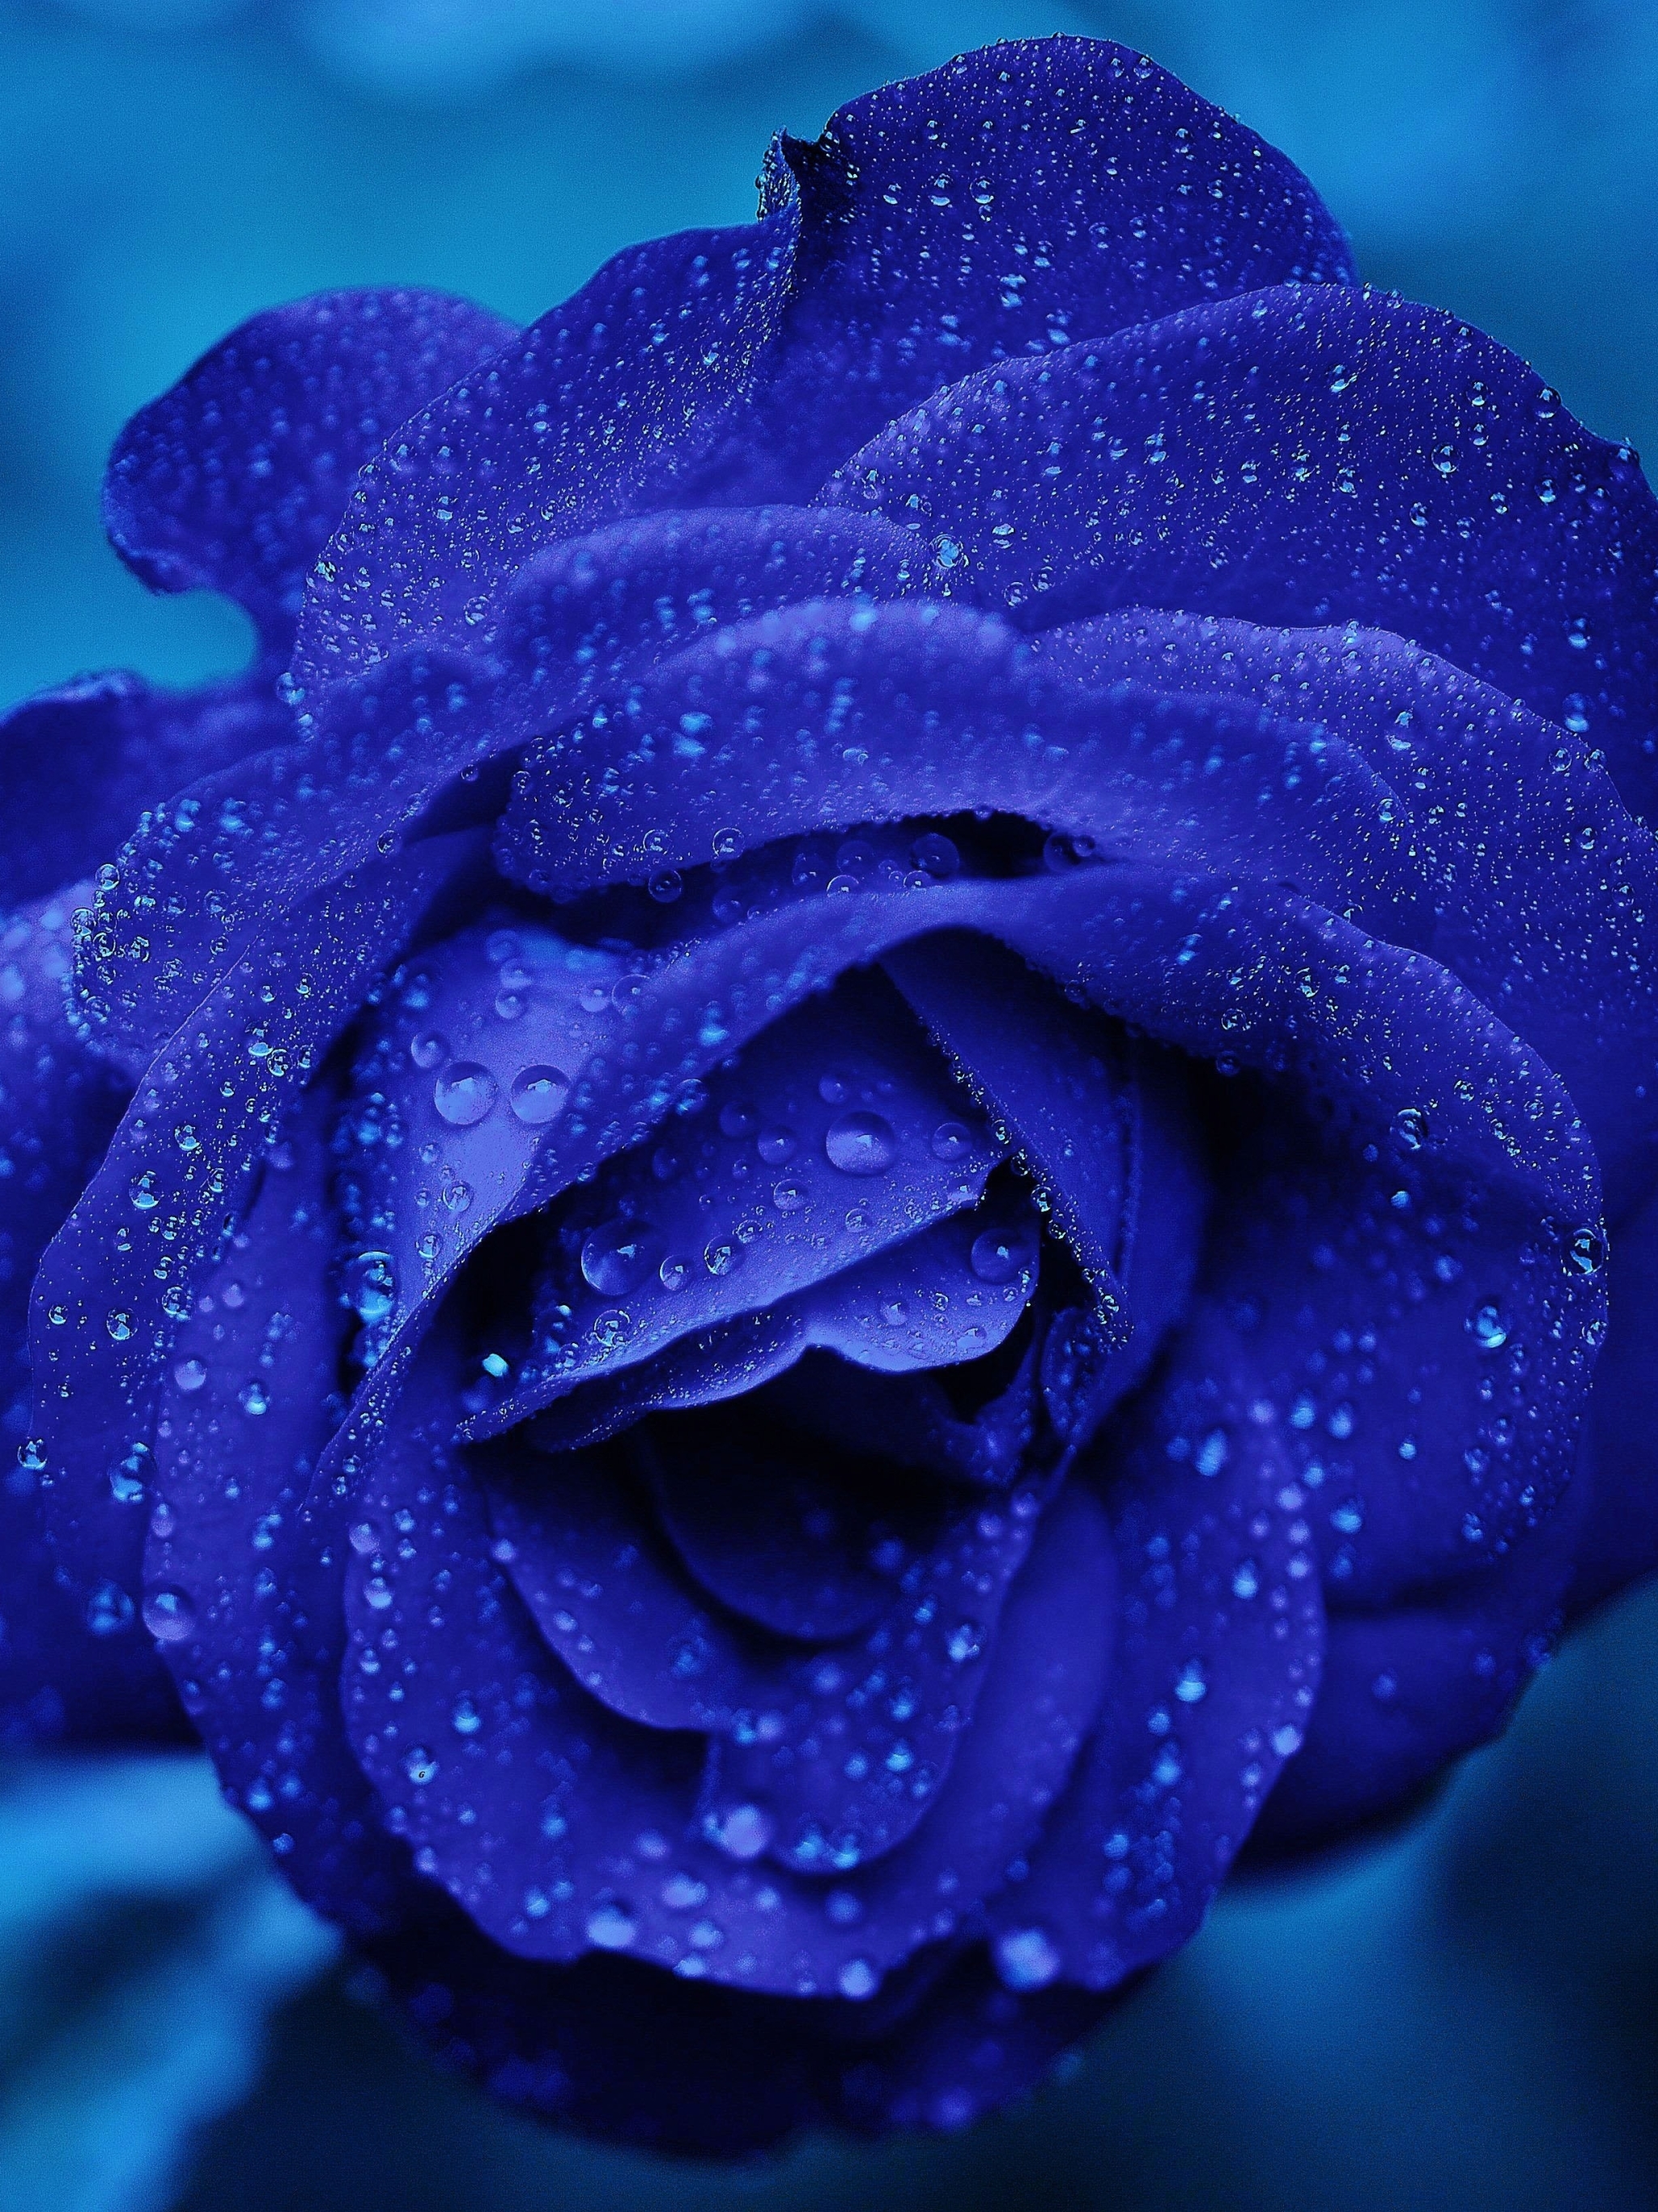 earth, rose, flower, blue flower, water drop, blue rose, flowers